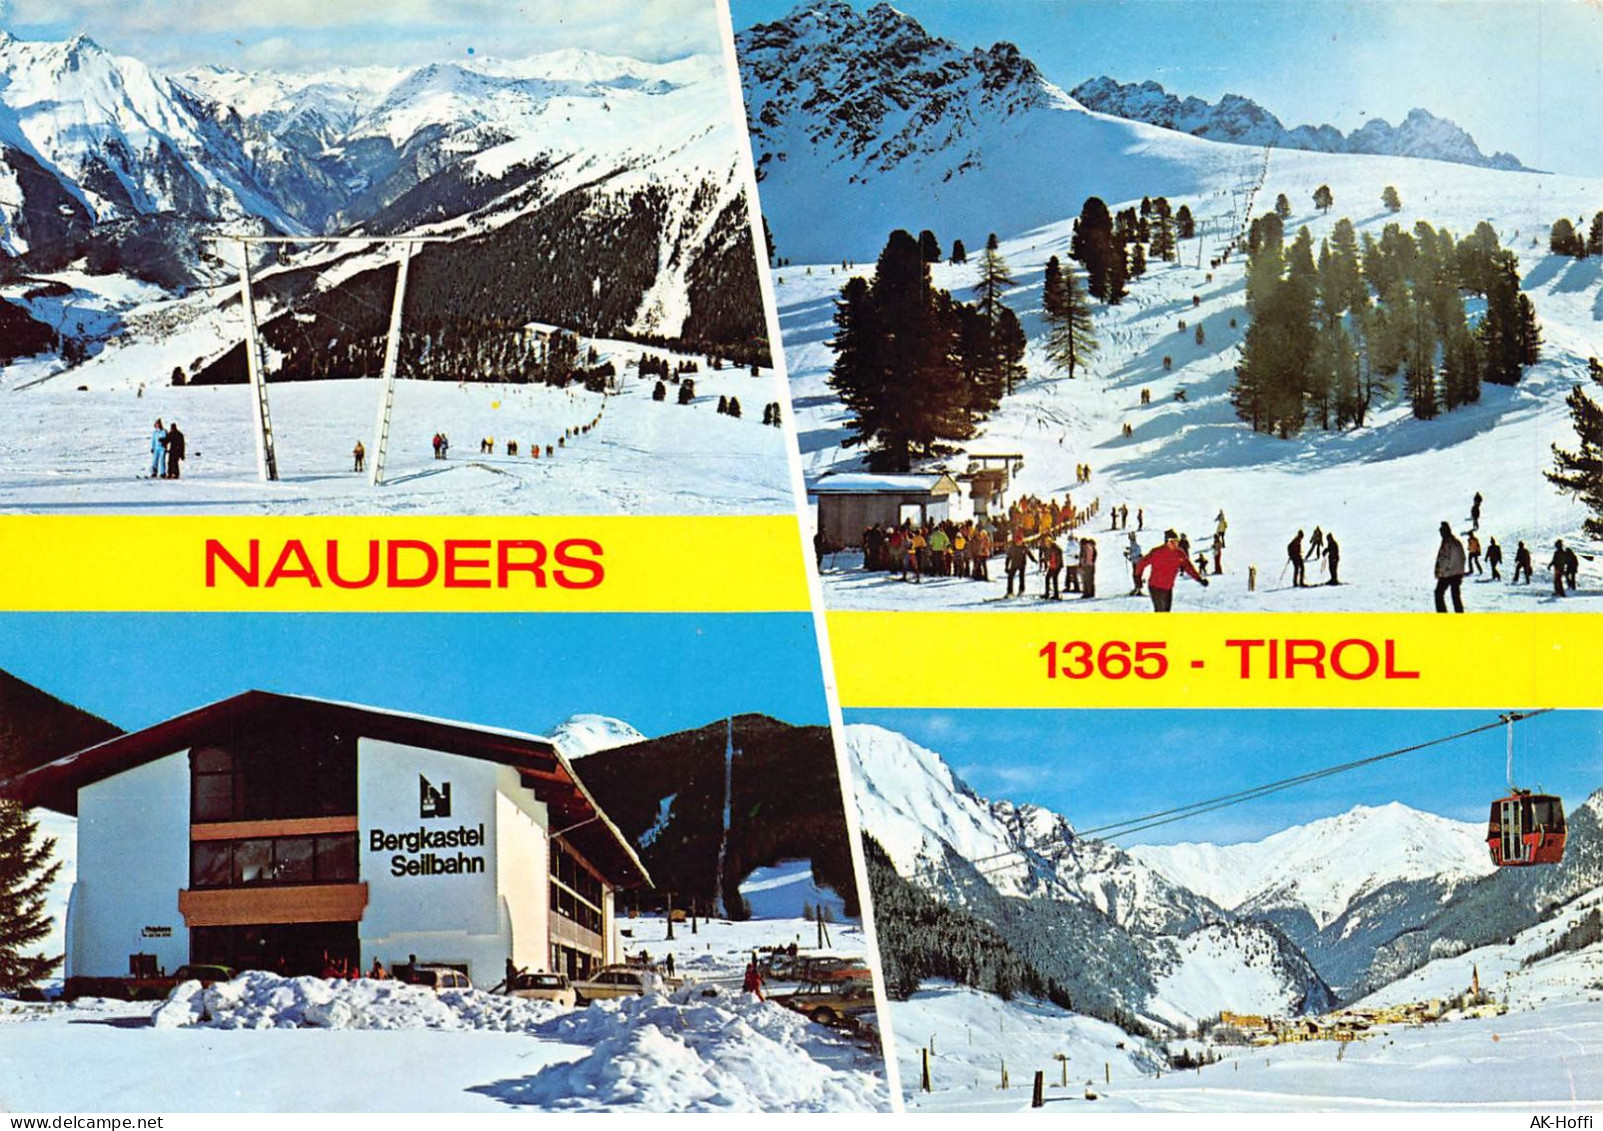 Nauders / Tirol - Bergkastel Seilbahn Skifahrer Skilift - Funicular Railway